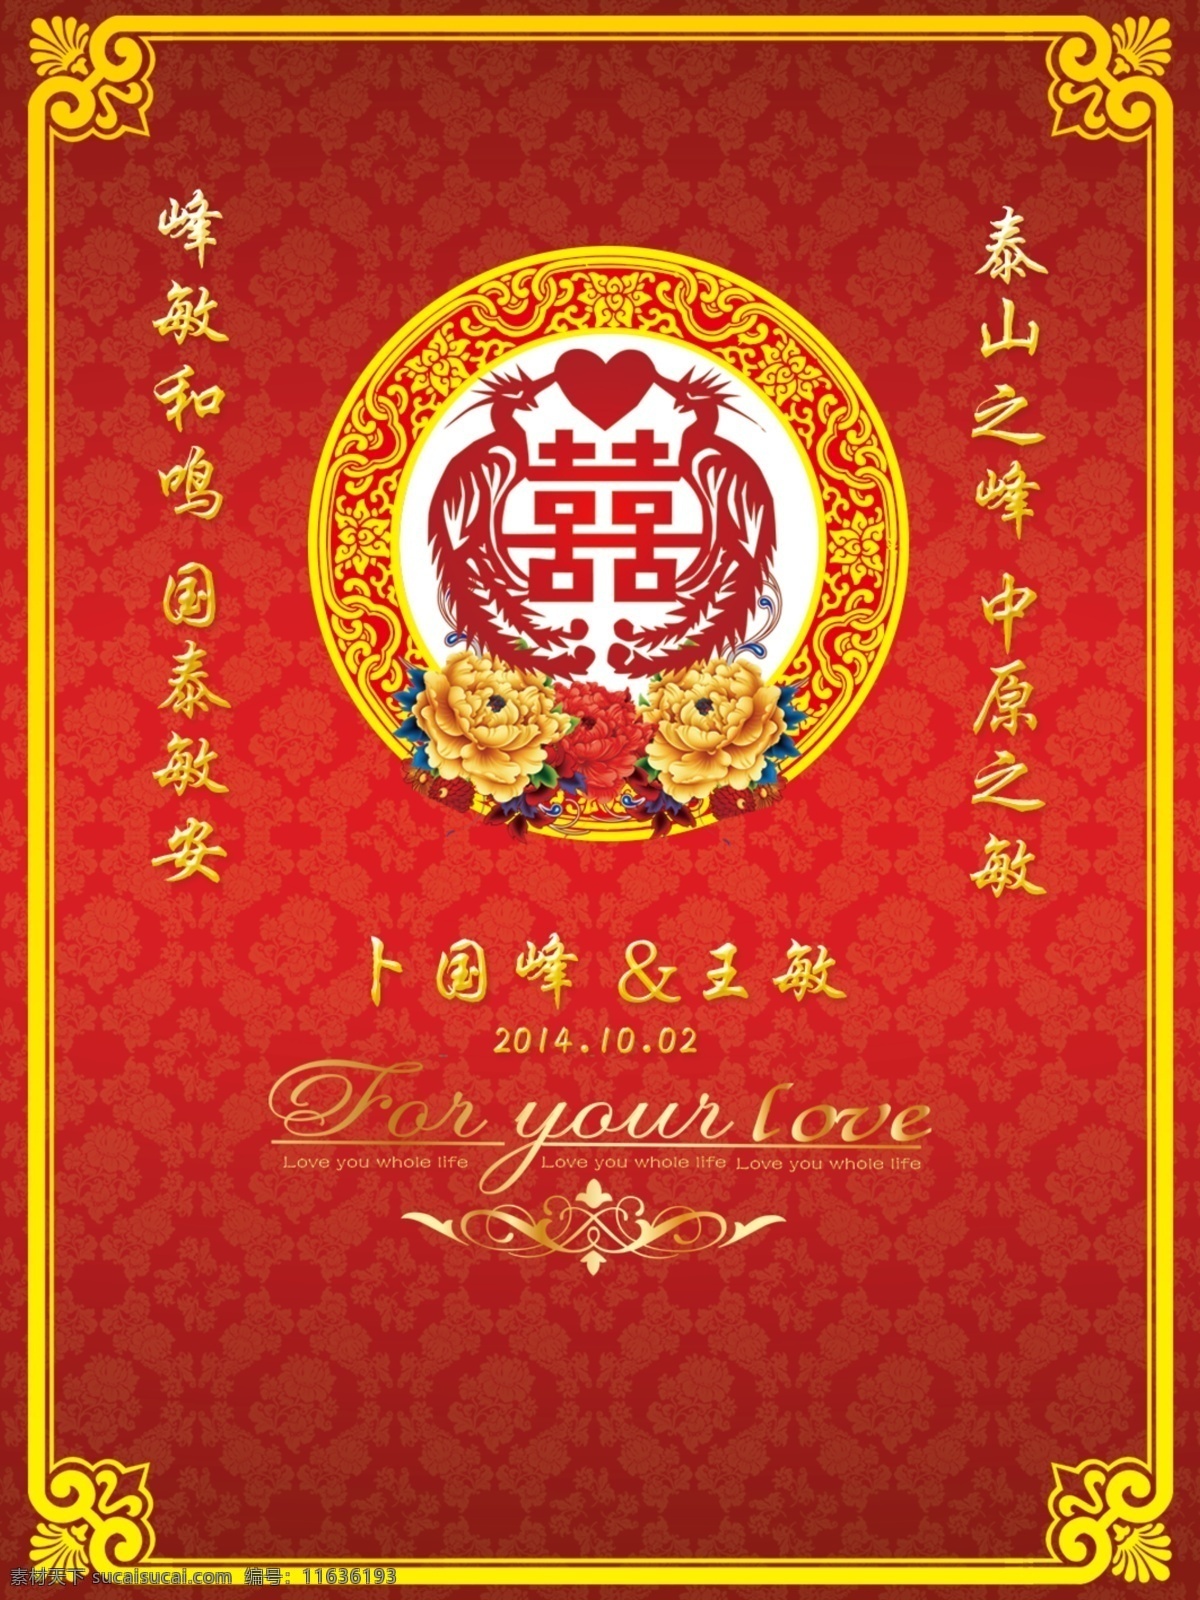 中式kt板 迎宾牌 欧式花边 边框 喜字 牡丹 红色迎宾牌 婚礼背景 婚礼 分层